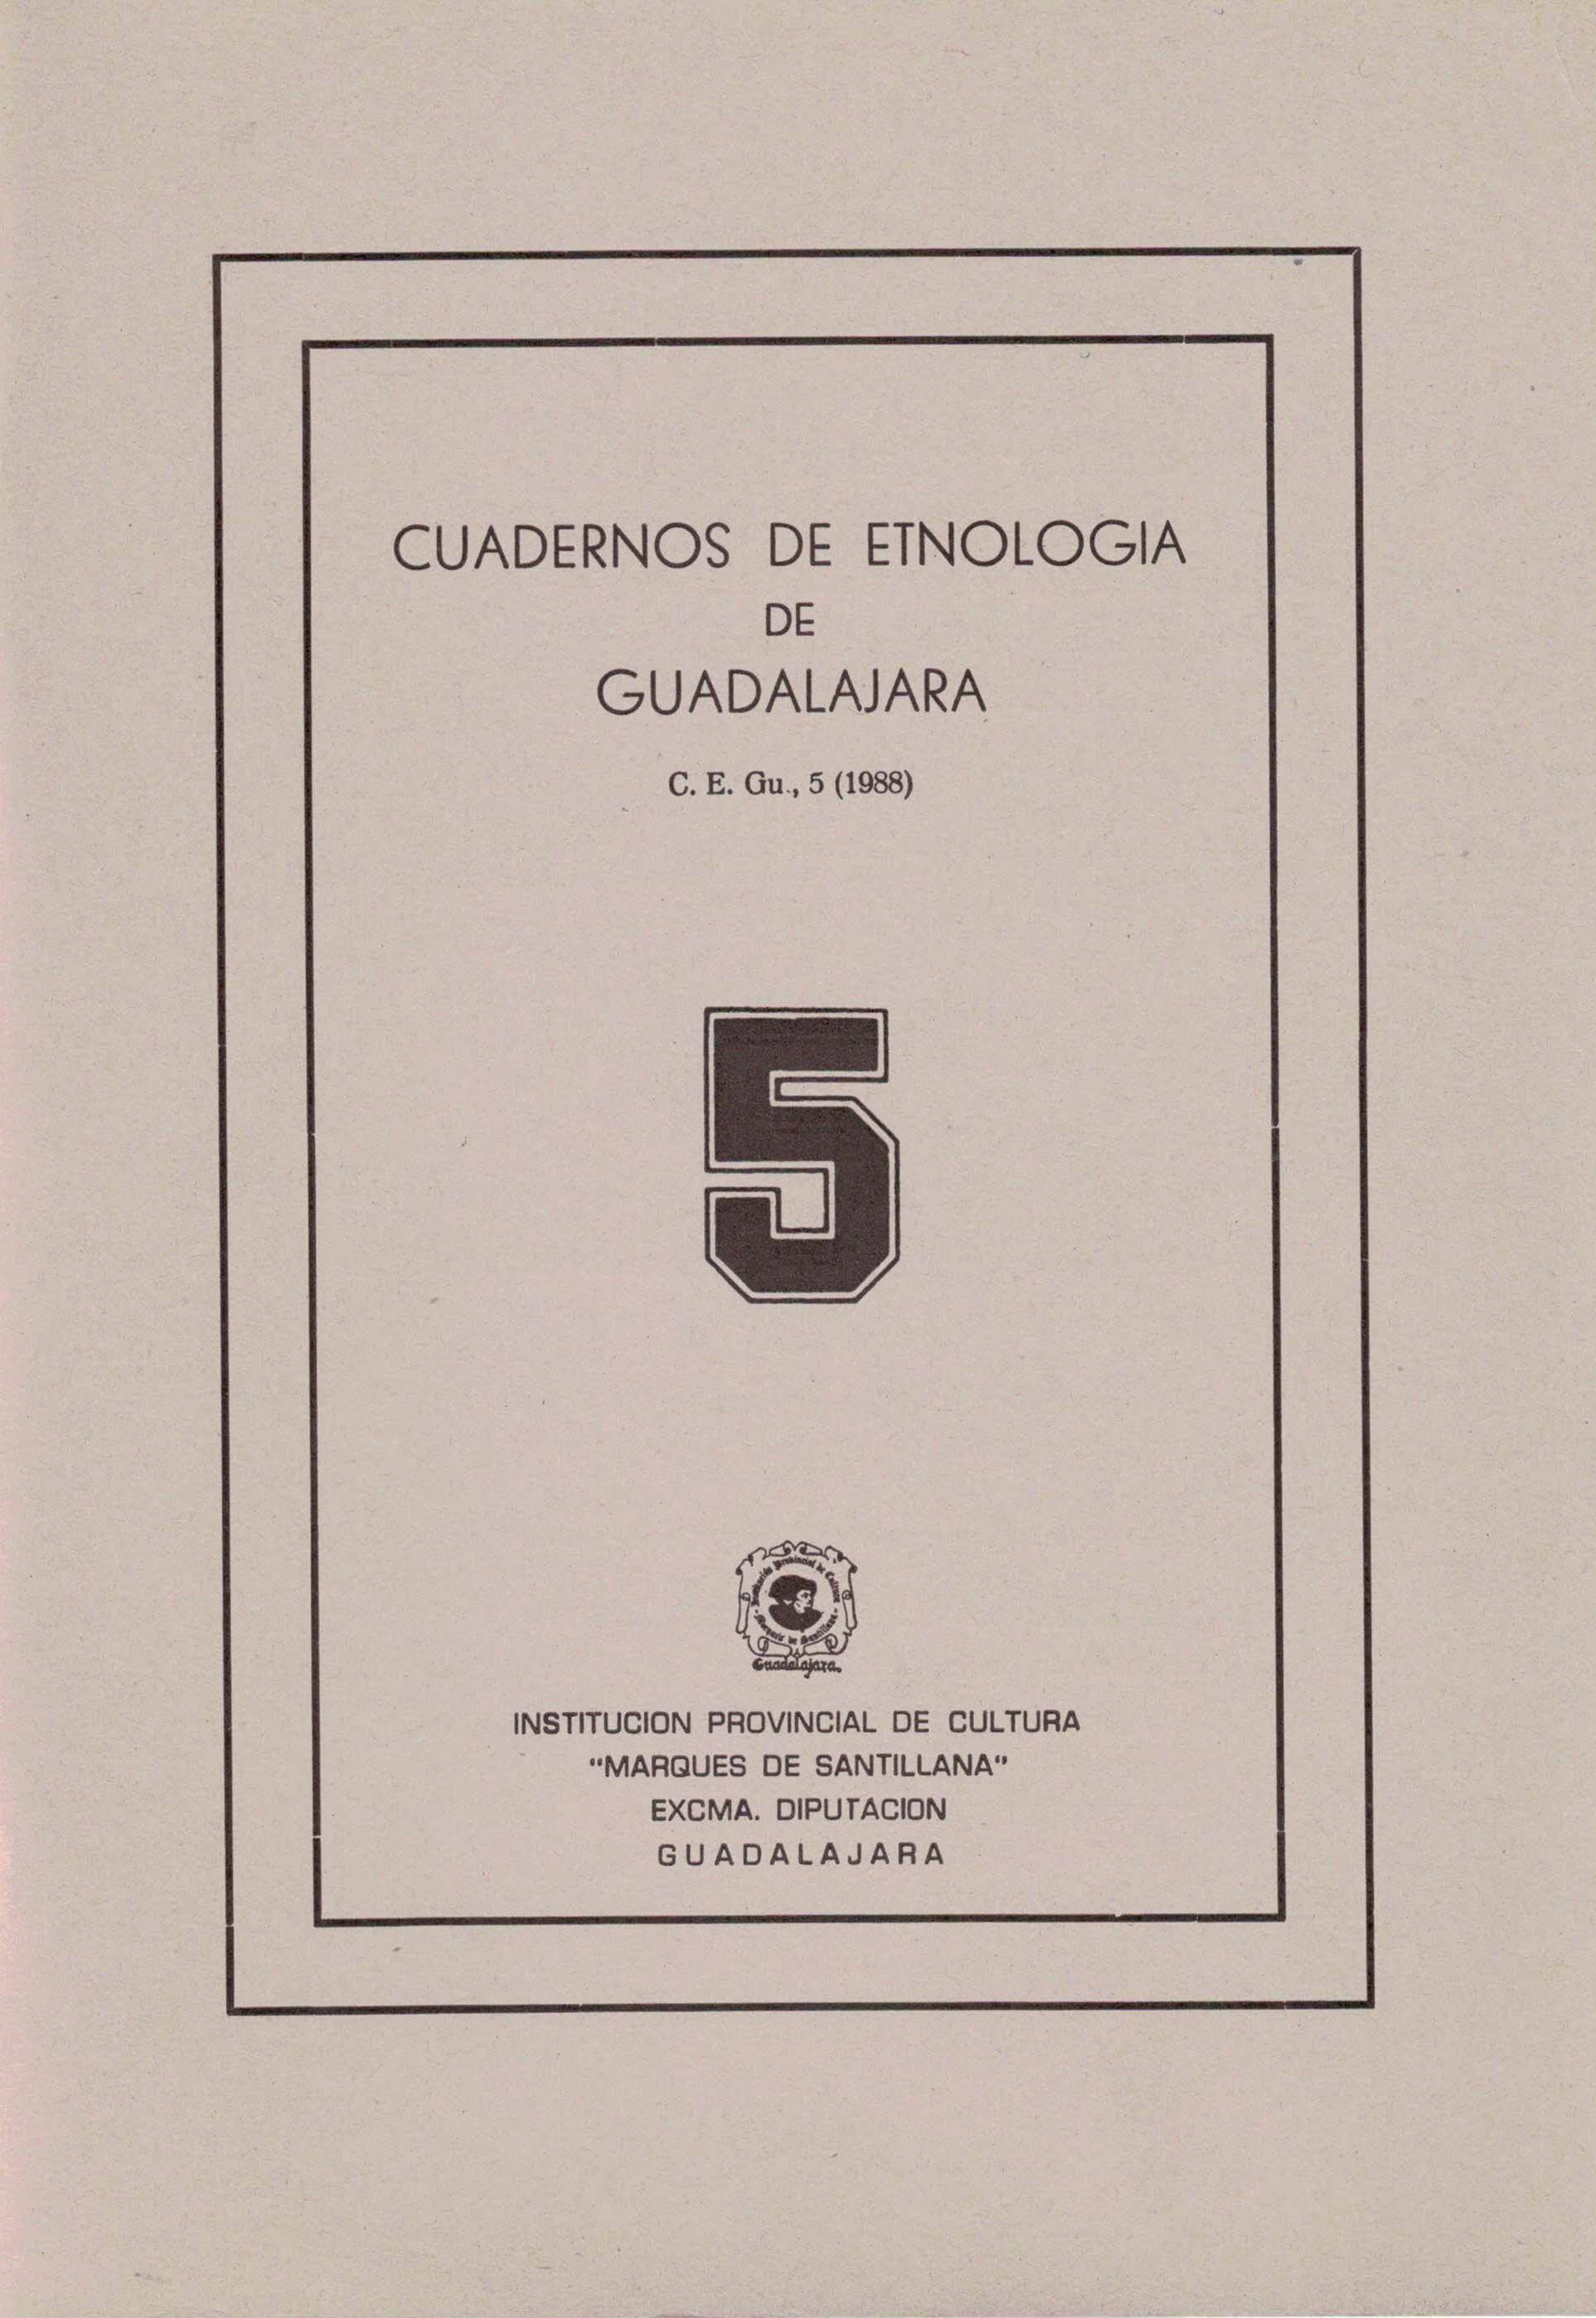 Cuadernos de Etnologia de Guadalajara 5